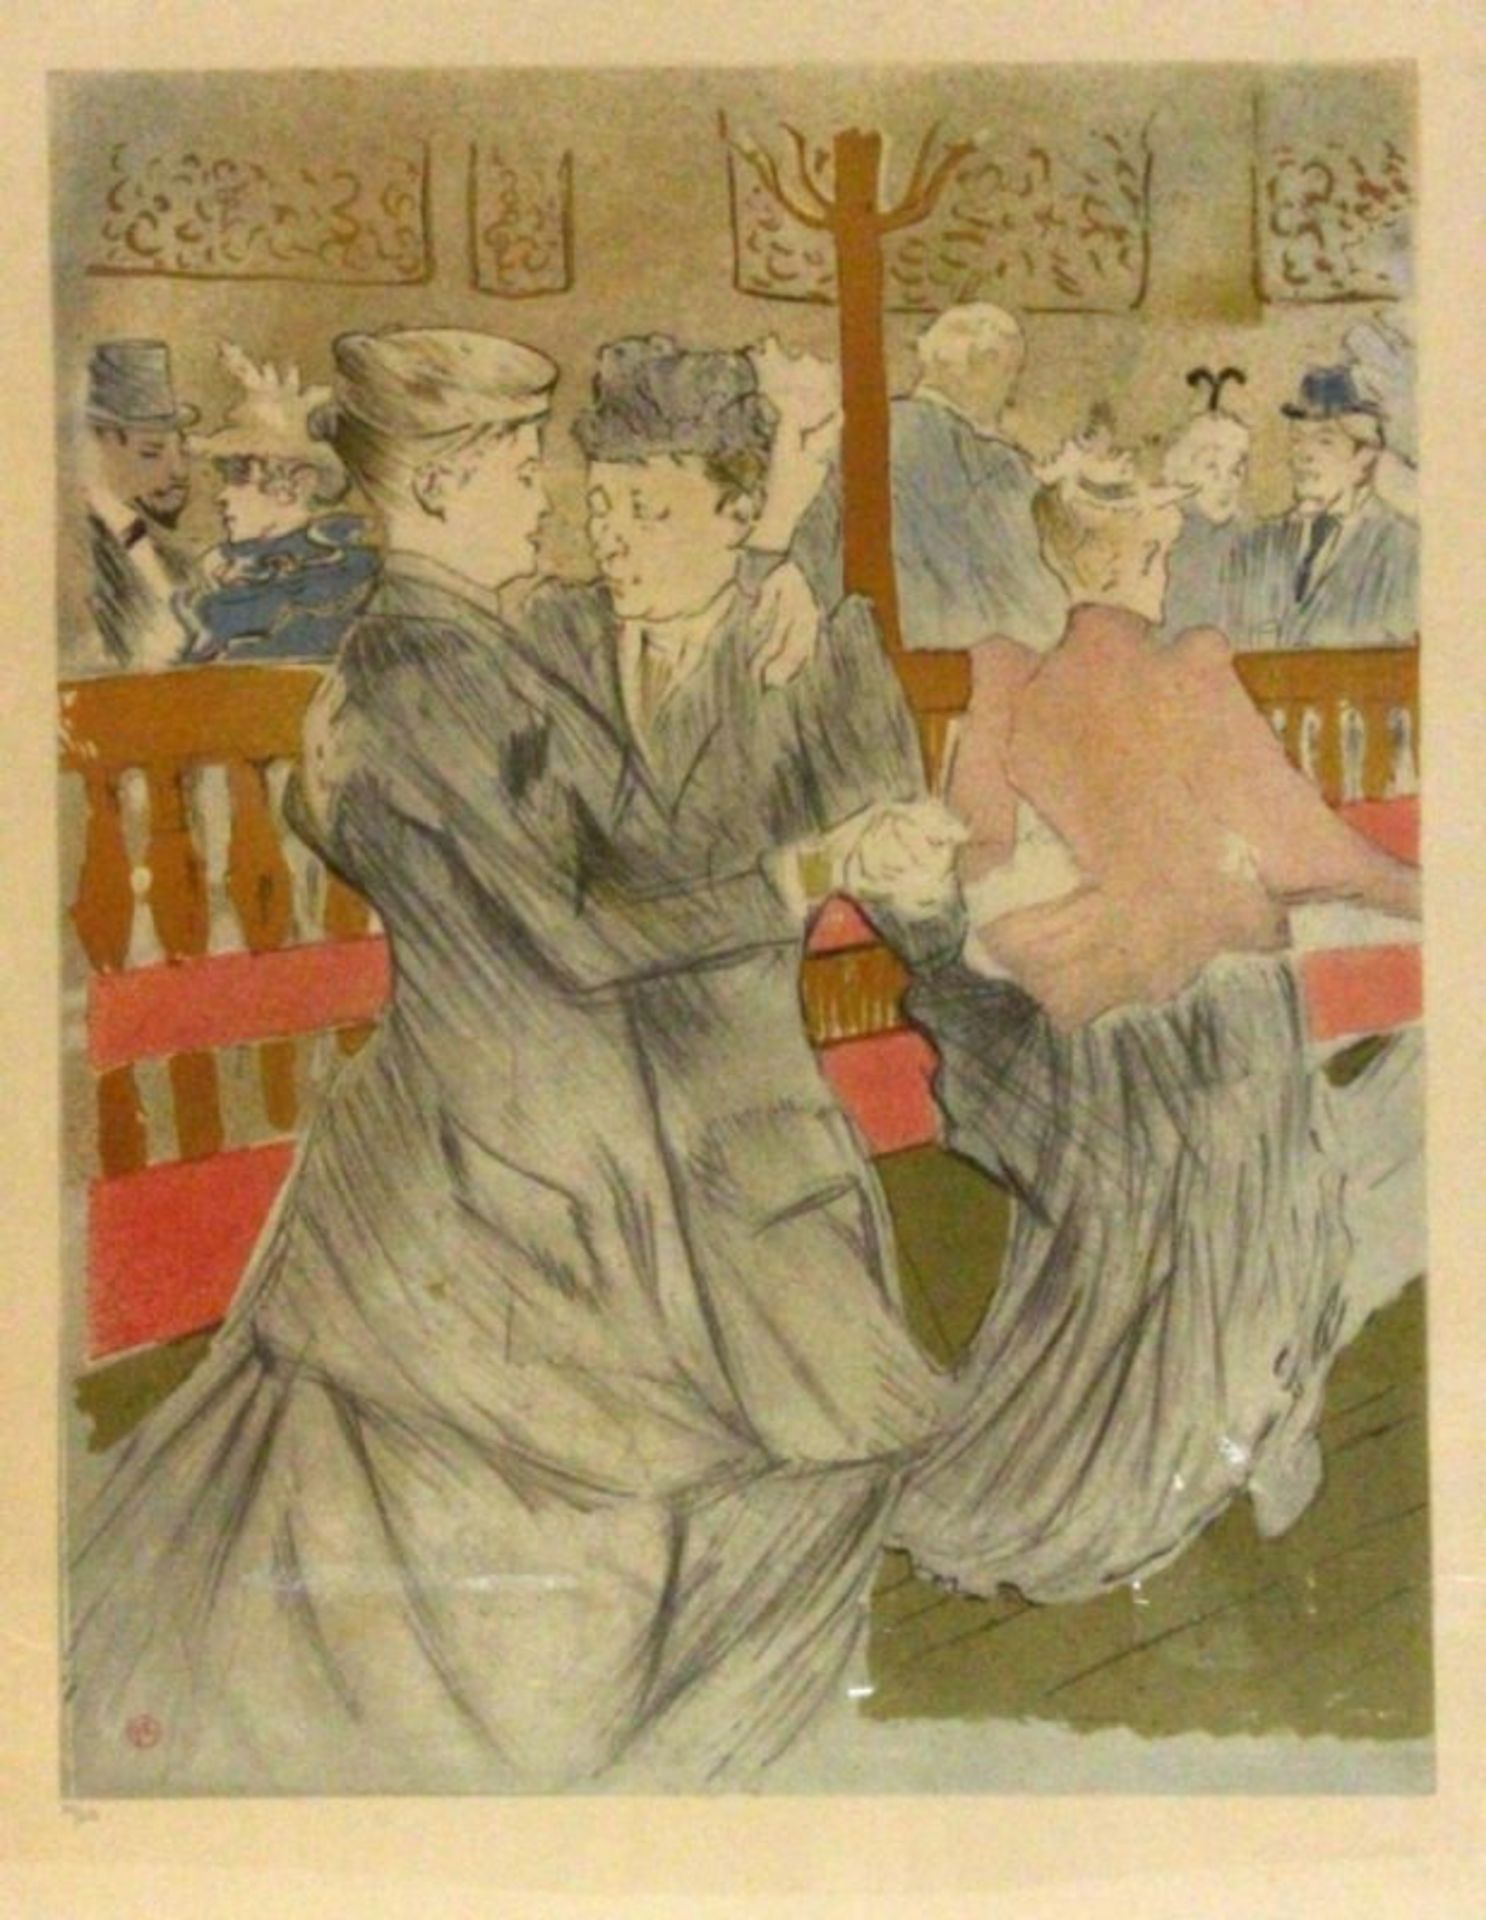 HENRI DE TOULOUSE-LAUTREC Albi 1864 - 1901 Chateau Malrome Dancing couple. Coloured